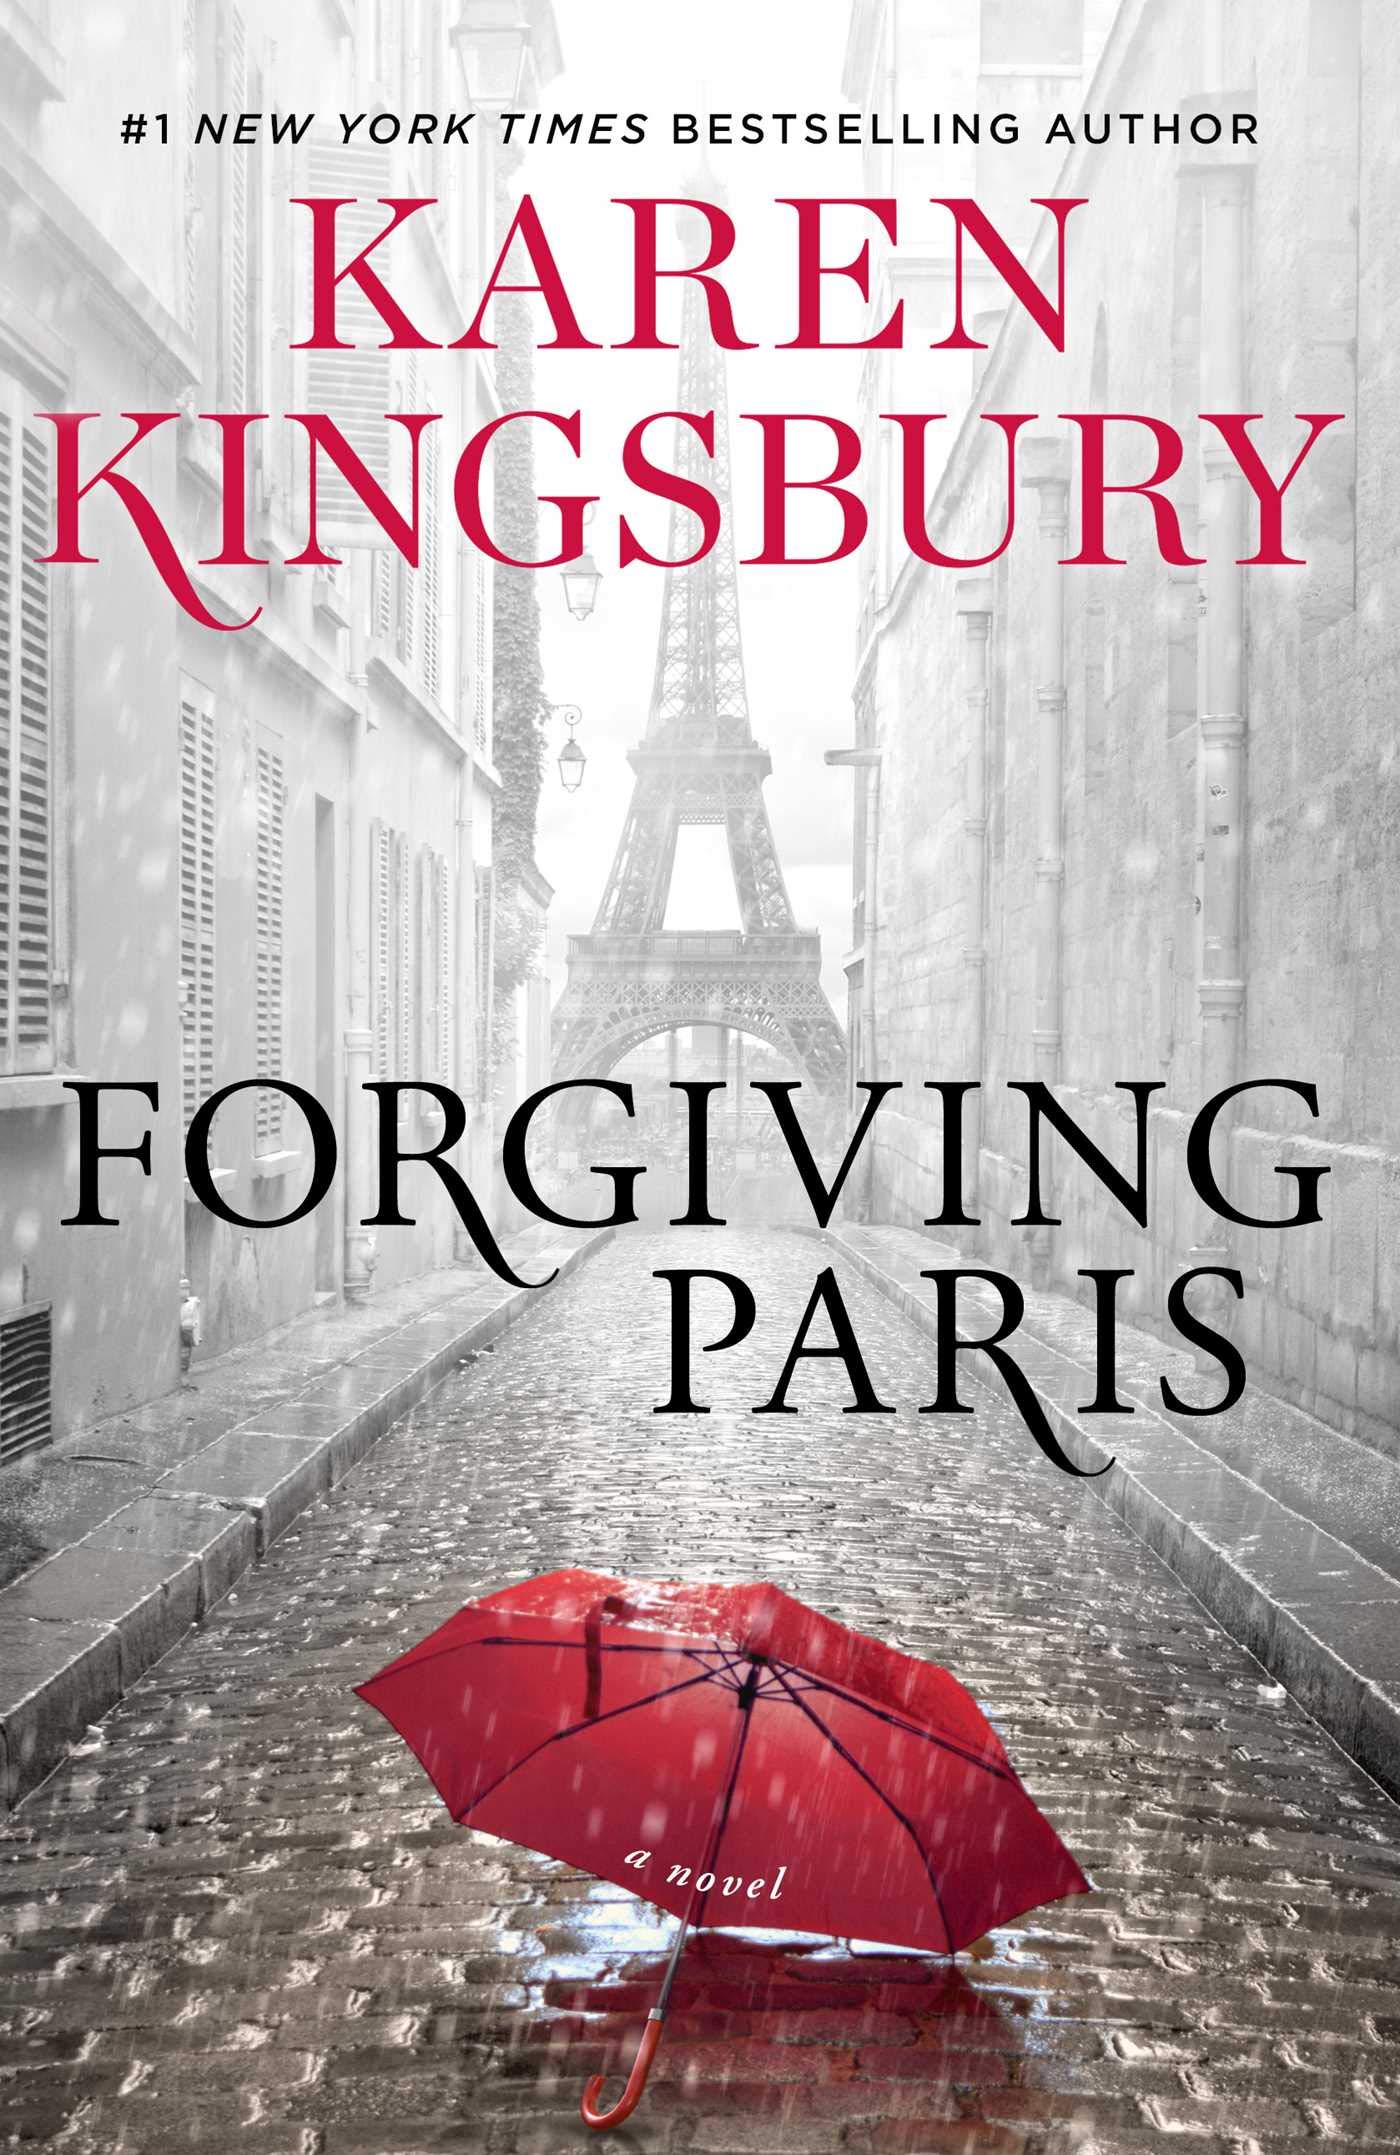 Image for "Forgiving Paris"